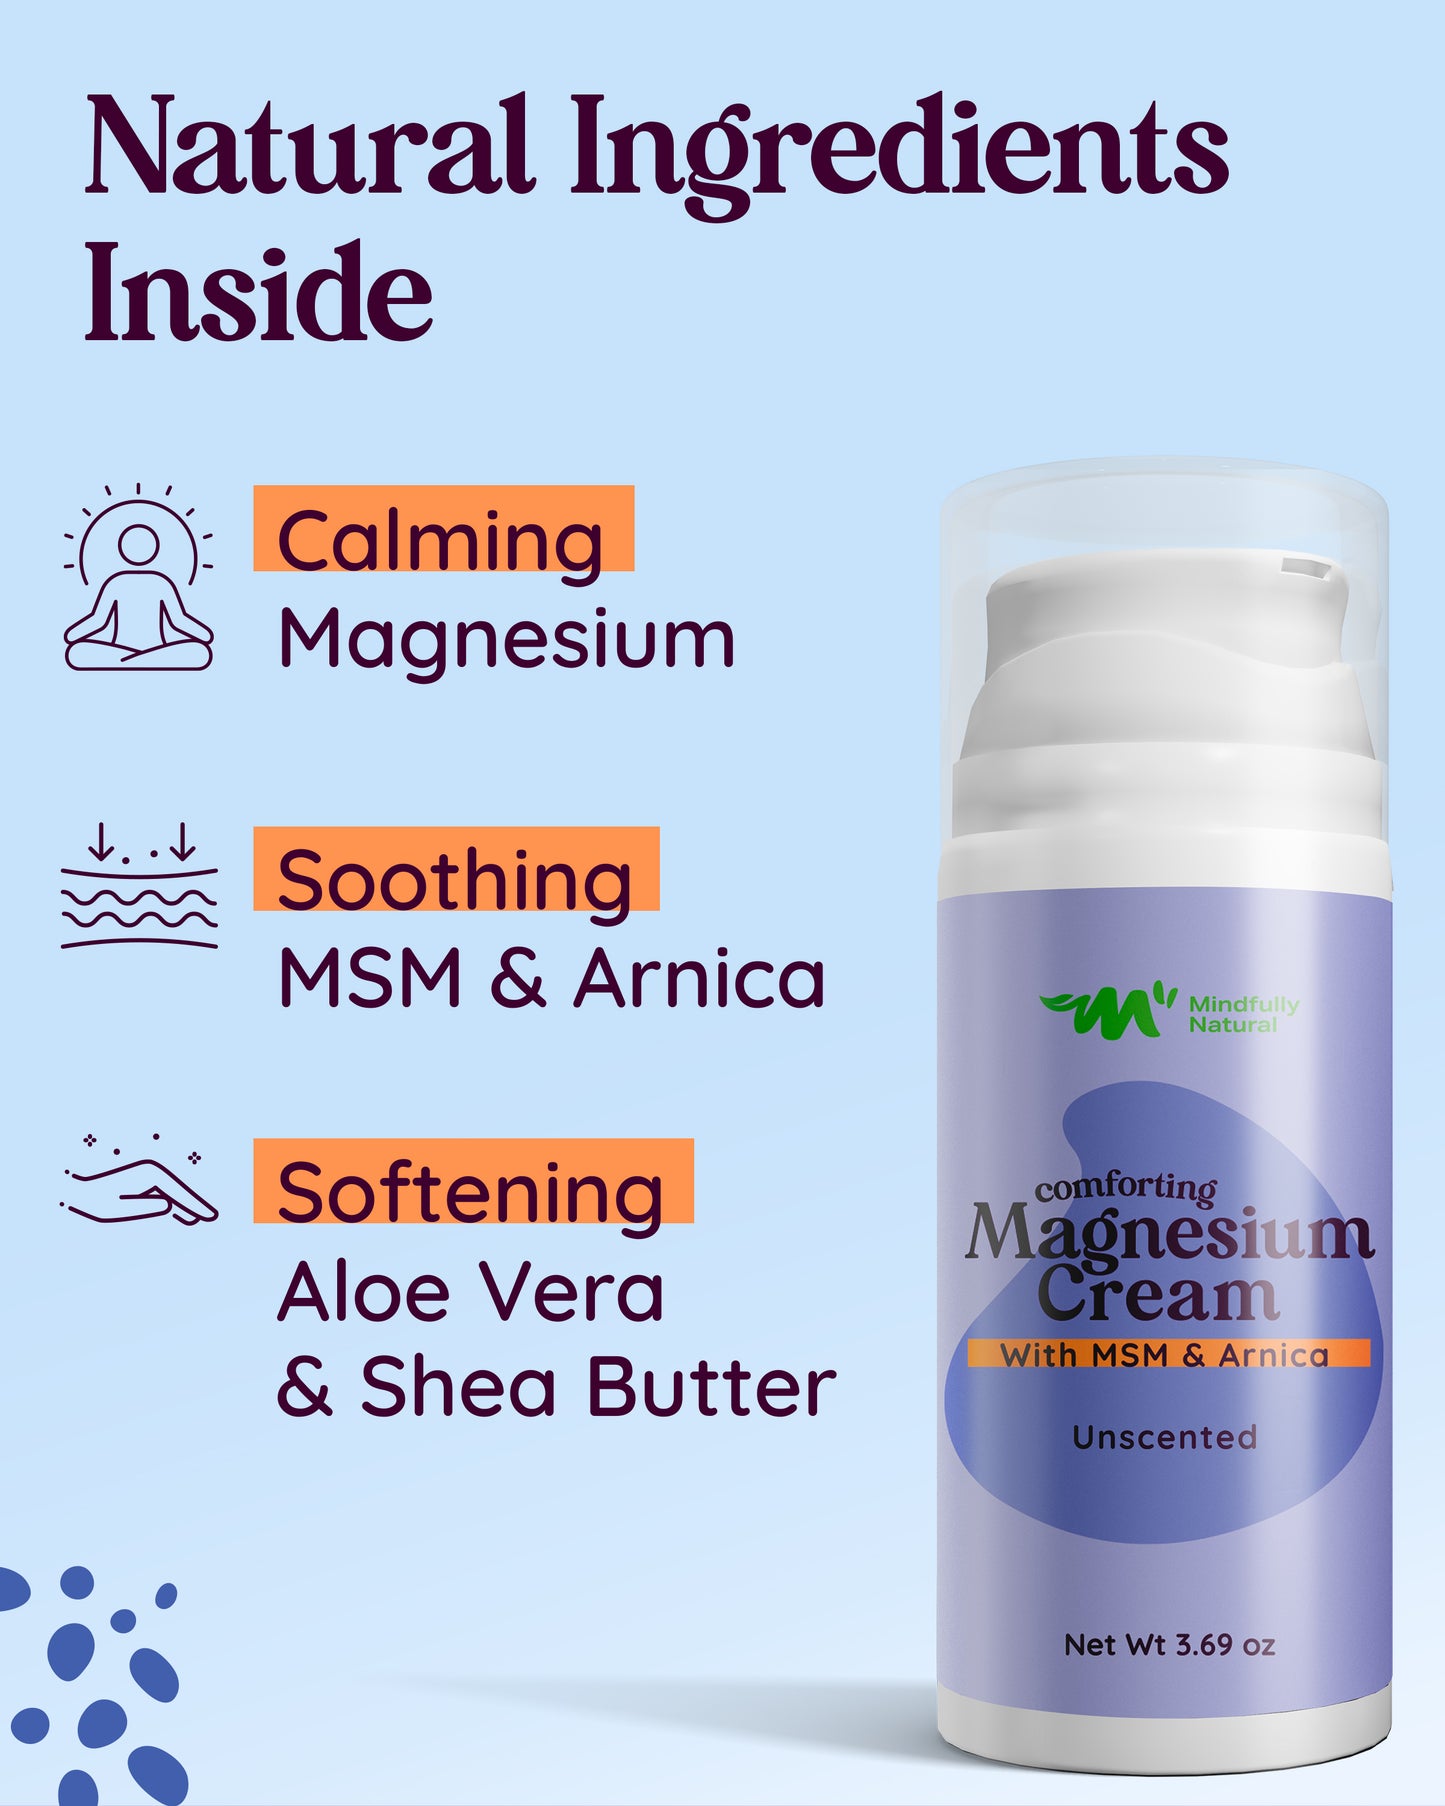 Magnesium Cream Unscented